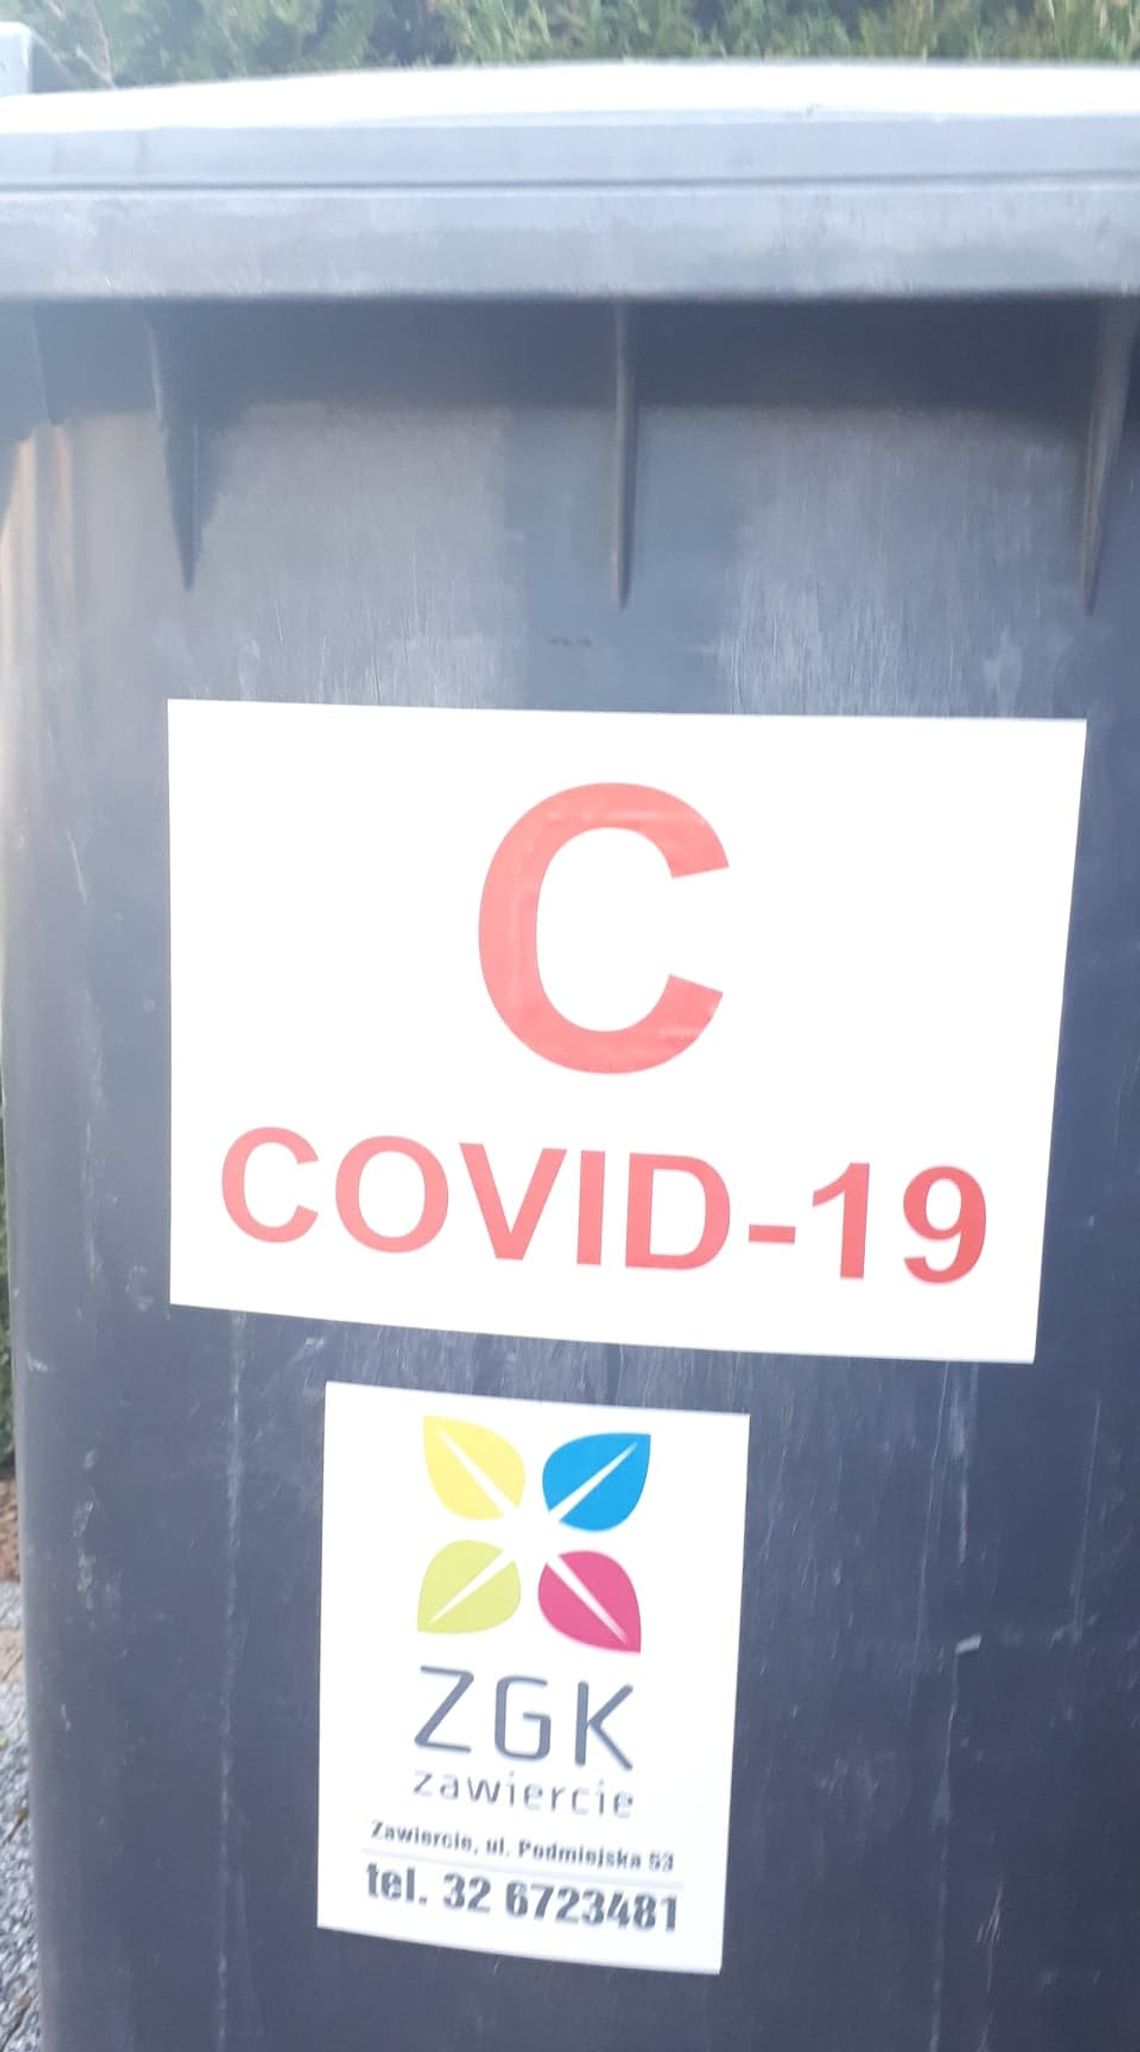 ZGK Zawiercie „oznakował” domy chorych na COVID-19 Urząd Miasta Zawiercie przyznaje, że przekazał spółce adresy zakażonych. Policja wszczyna dochodzenie po naszym artykule!